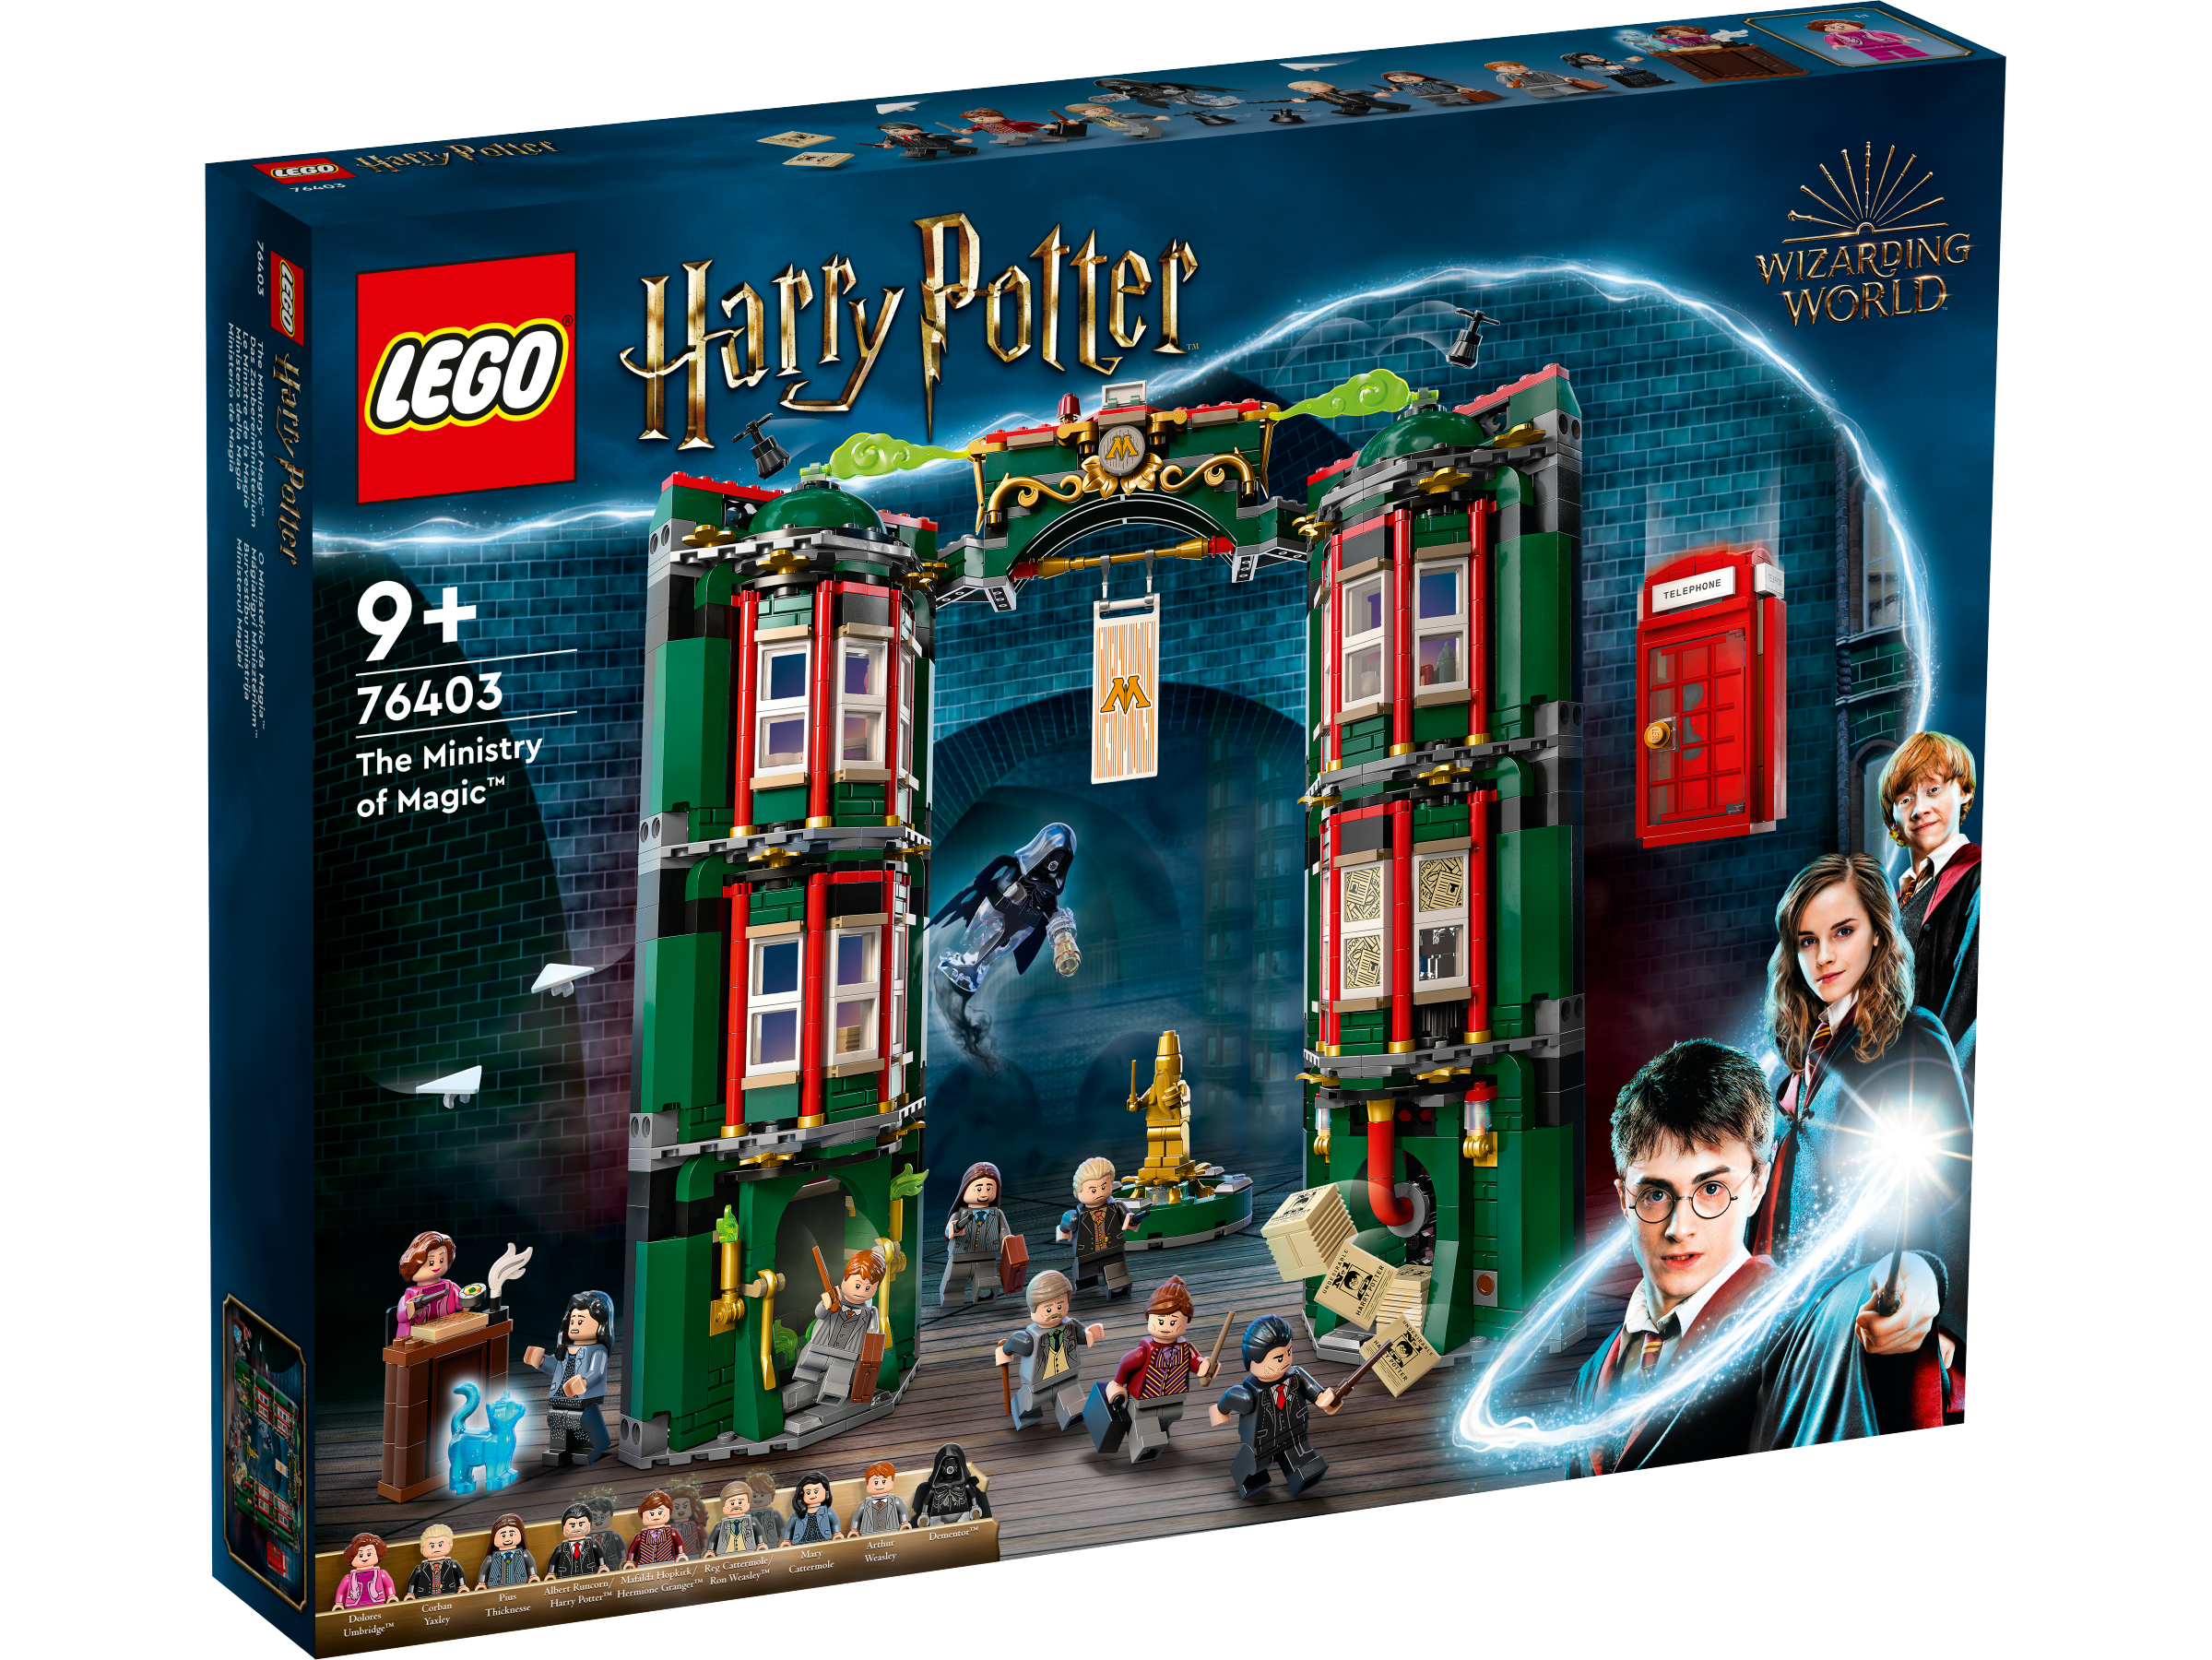 LEGO 76421 Dobby o elfo de Casa - LEGO Harry Potter - BricksDirect Condição  Nova.